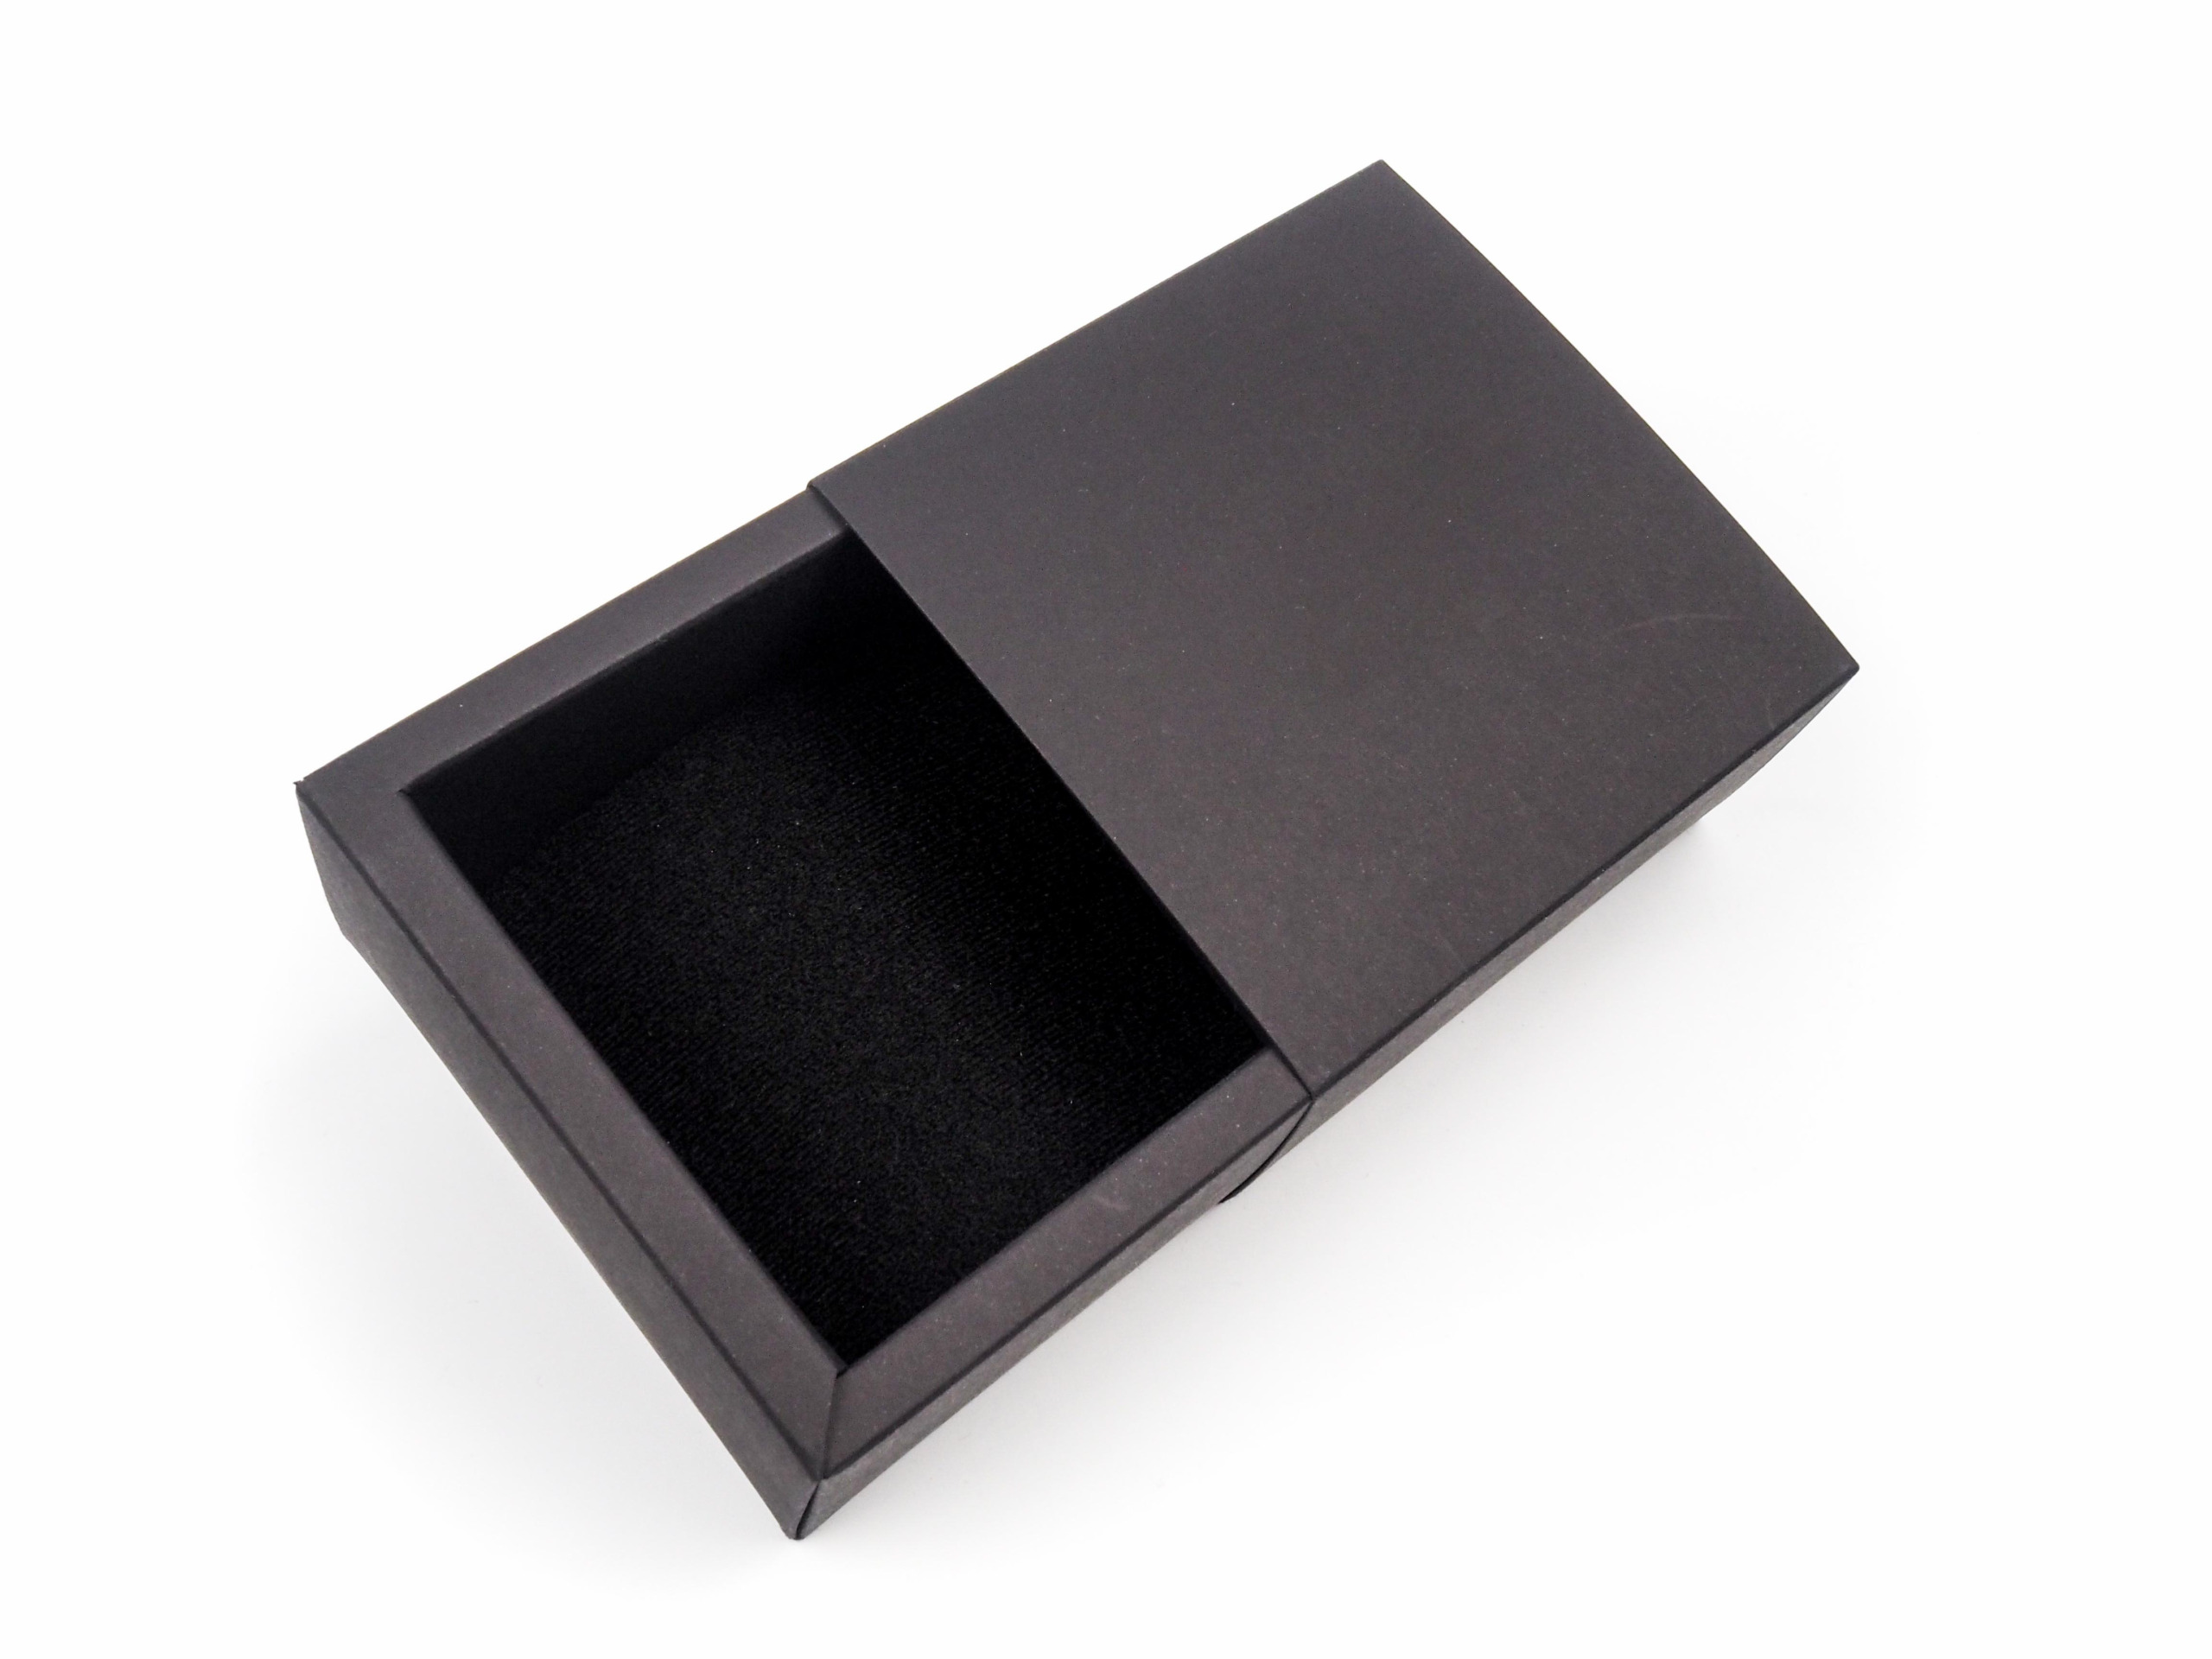 Dárková krabička byla vyrobena na vložení šperků s požadavkem na vysouvání z boku. Uvnitř byl vložena tenká molitanová vložka.